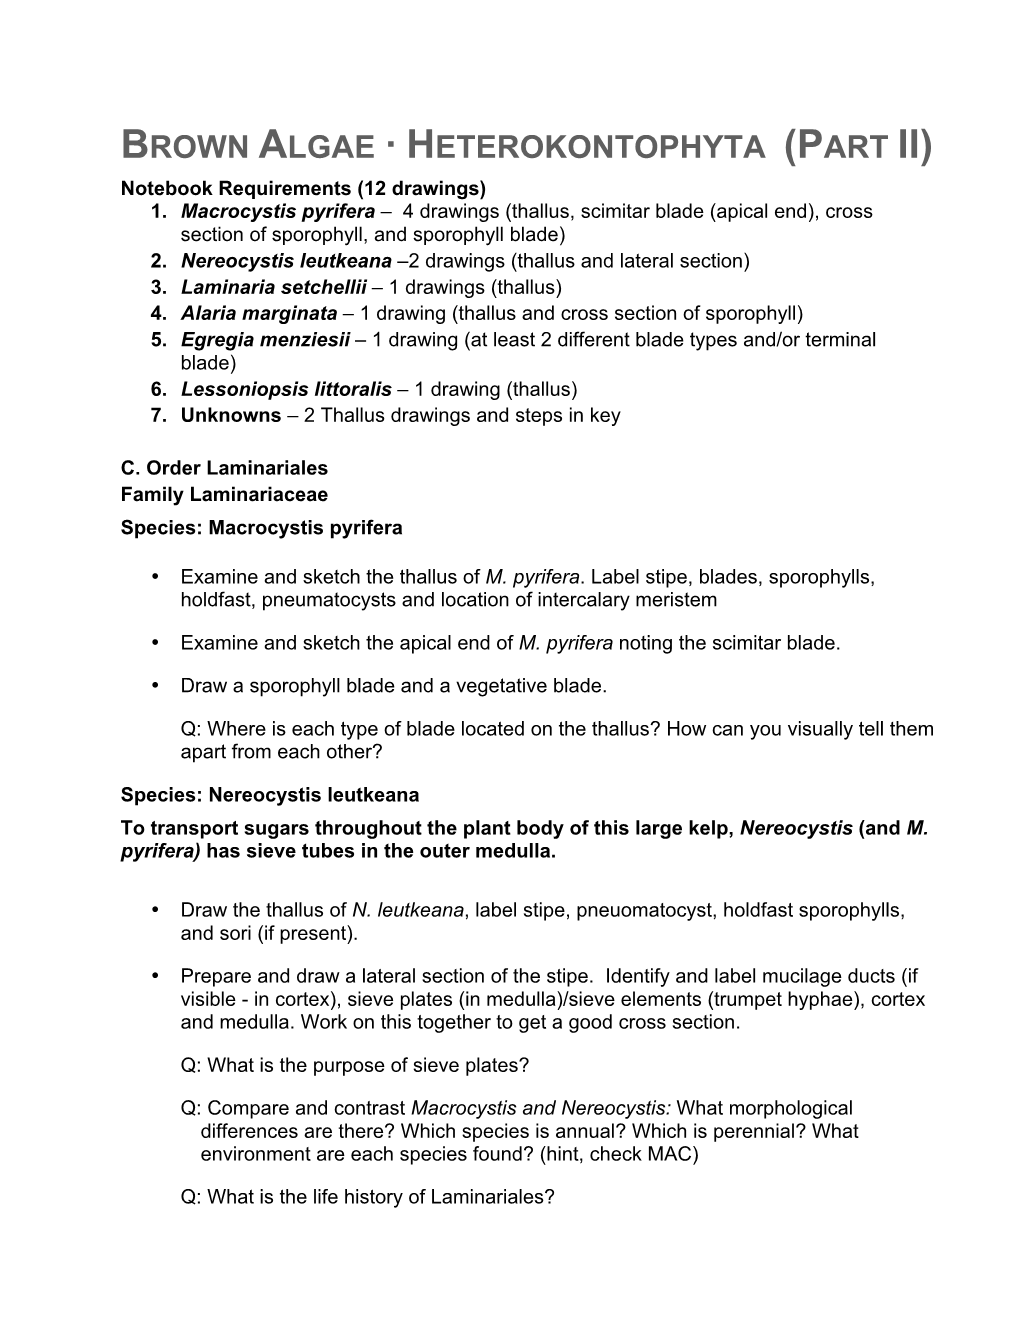 BROWN ALGAE · HETEROKONTOPHYTA (PART II) Notebook Requirements (12 Drawings) 1